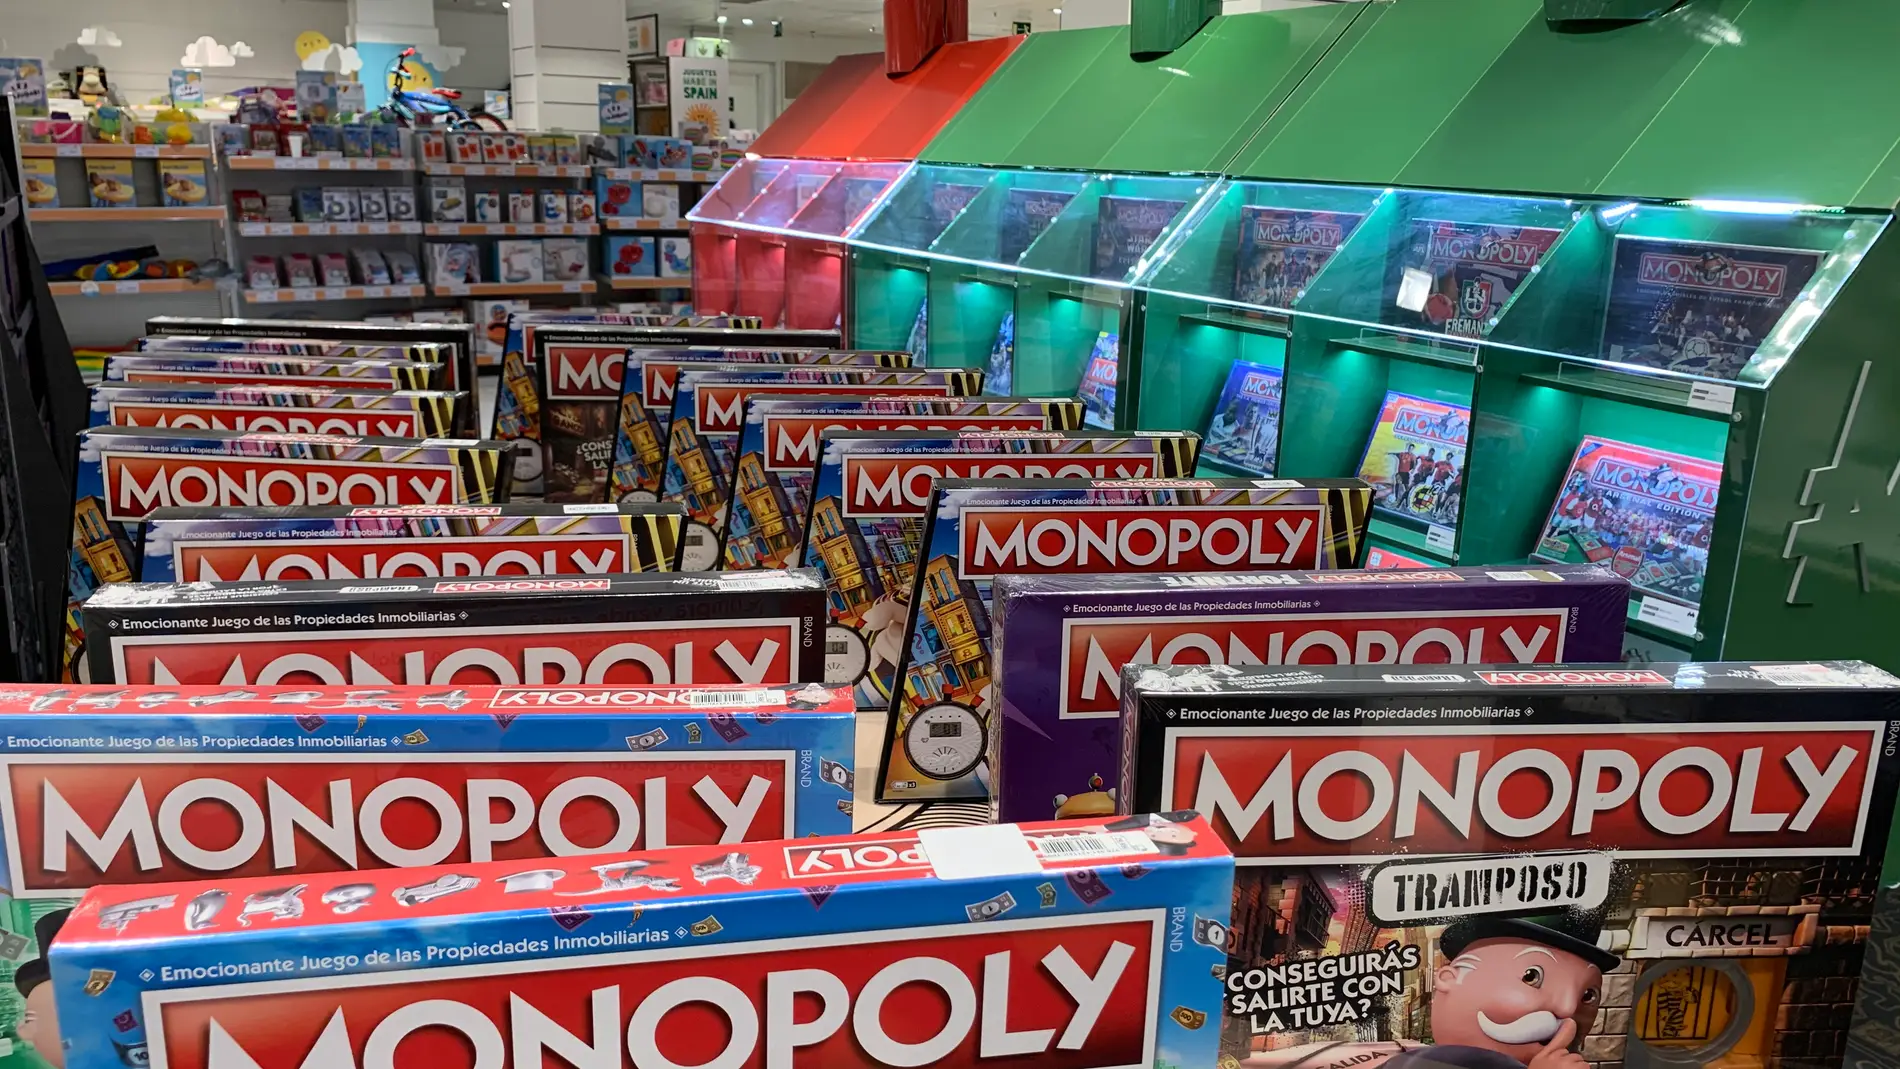 Ya puedes descubrir 50 versiones diferentes del Monopoly en una exposición en el Corte Inglés